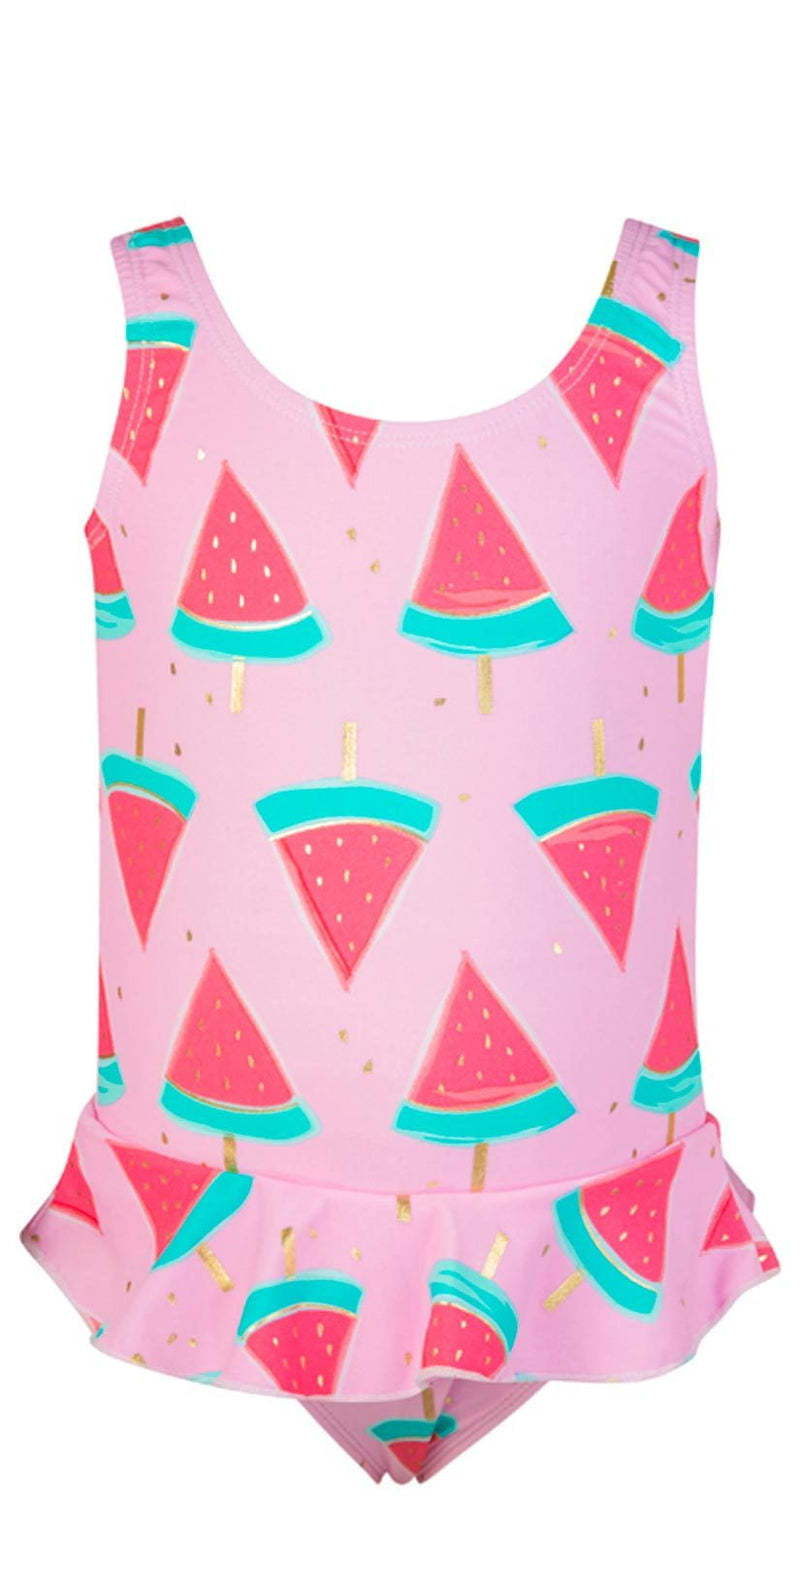 Snapperrock Little Girl's Skirted Watermelon Swimsuit G13049: